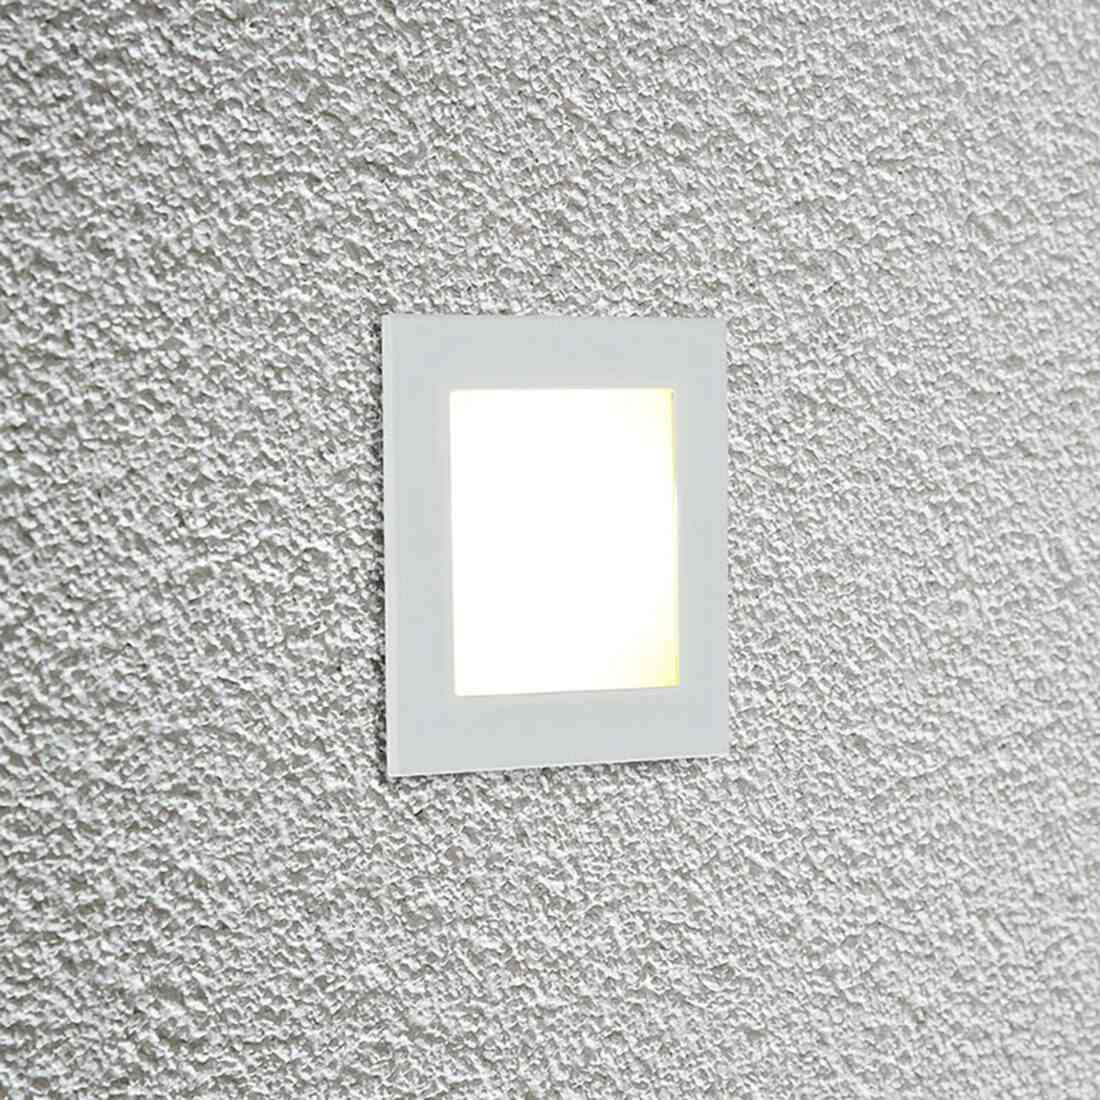 EVN P2180 LED nástěnné zapuštěné světlo 3000K bílá